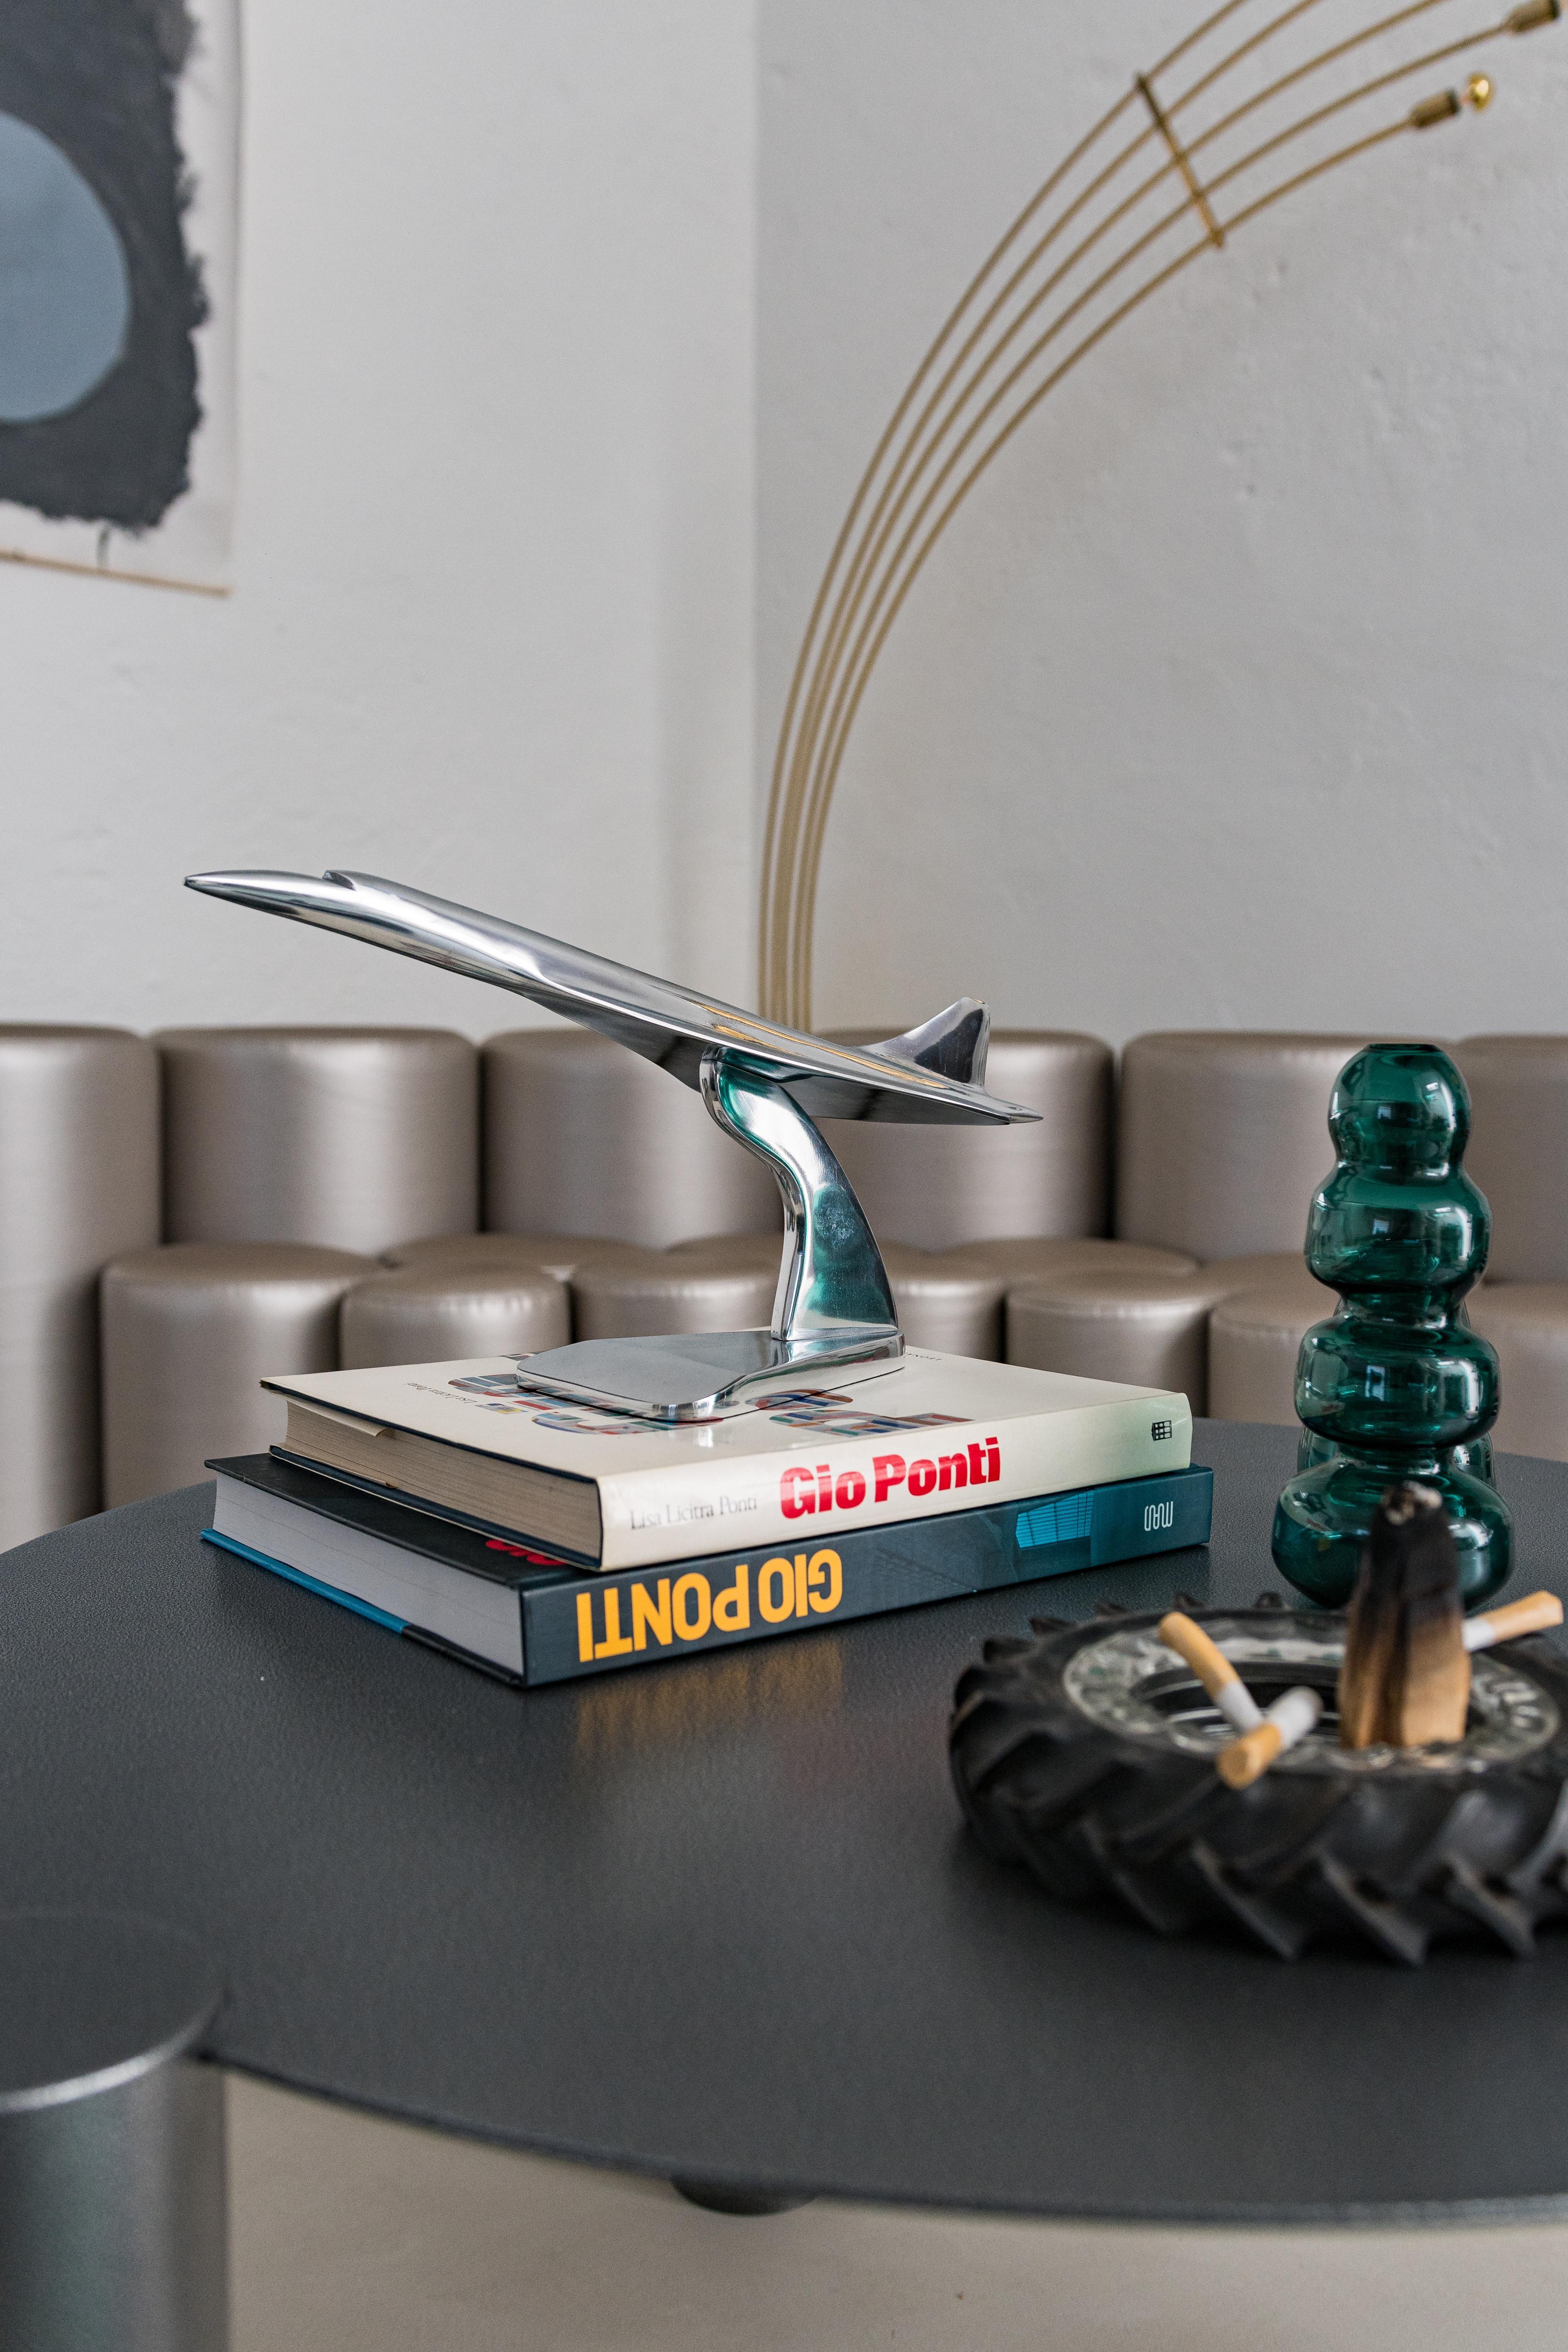 Dekorativer Artikel - Concorde Modell - Stilvolle Dekoration

Spinzi ist ein in Mailand ansässiges Kreativ-Atelier, das sich auf Möbeldesign sowie die Beschaffung und den Handel mit relevantem Sammlerdesign aus der Mitte des Jahrhunderts